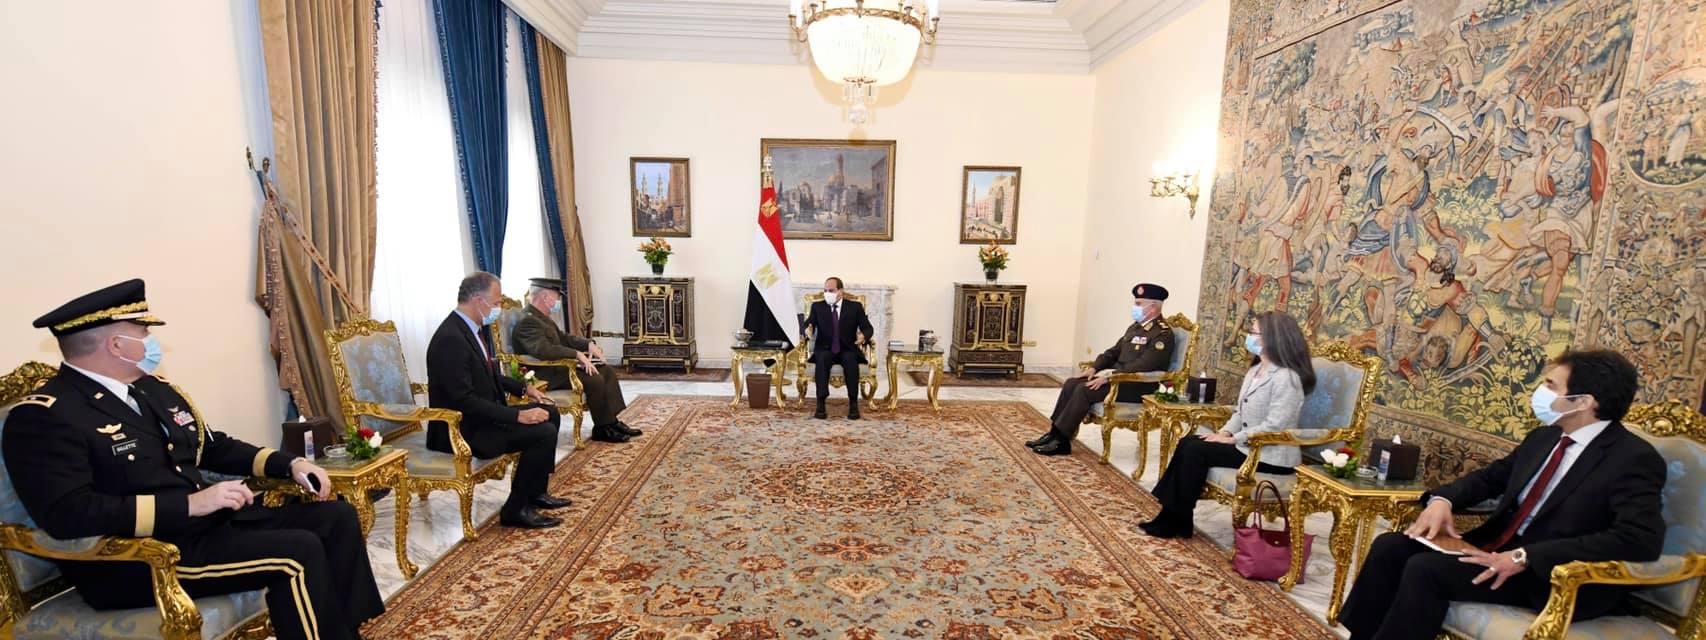 الرئيس المصري عبد الفتاح السيسي وقائد القيادة المركزية للجيش الأميركي (سنتكوم) الجنرال كينيث ماكنزي